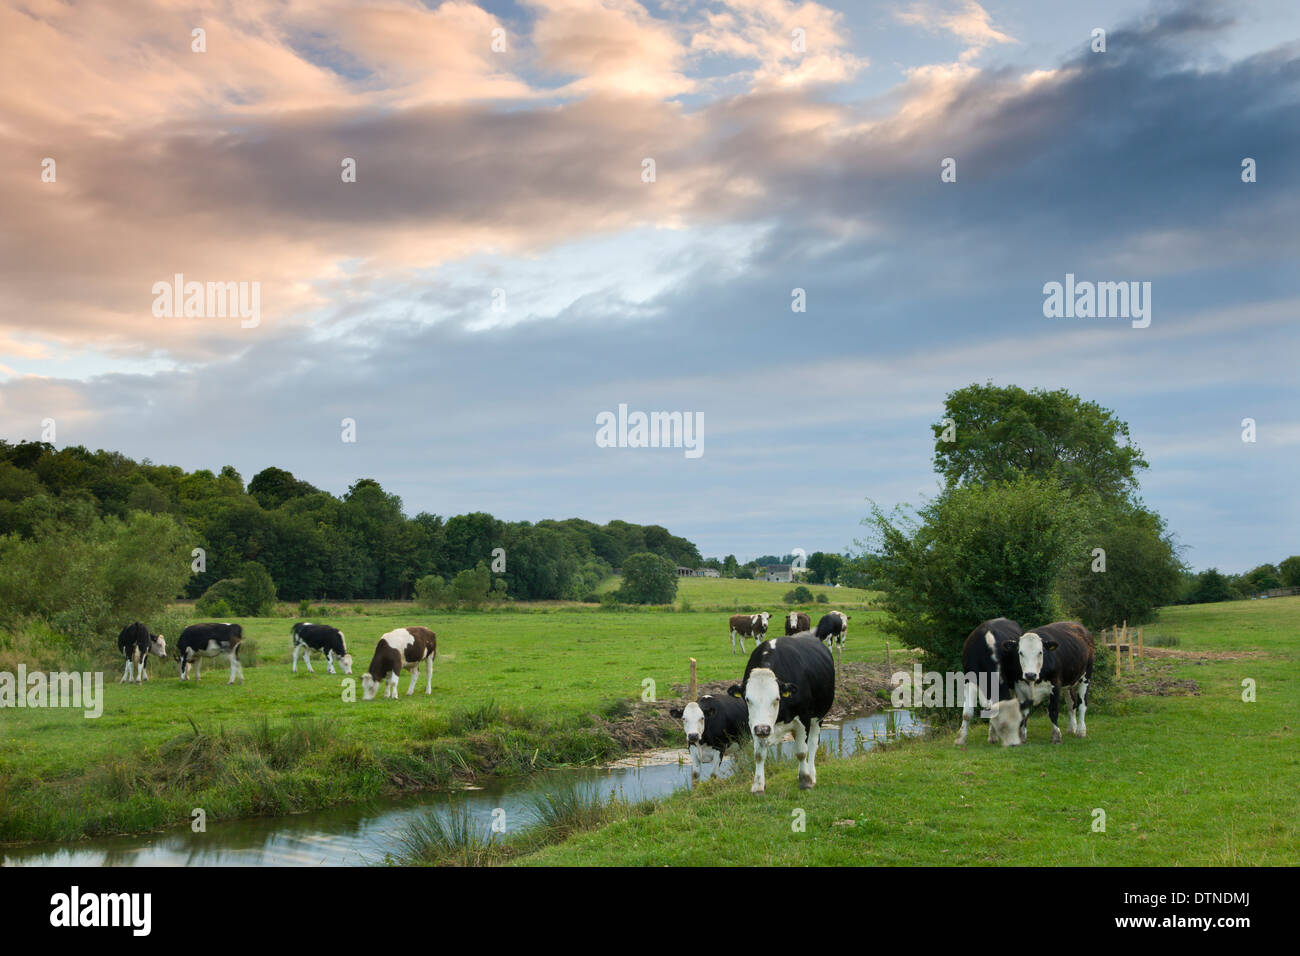 Les bovins broutent à côté de la rivière Windrush près de la région des Cotswolds ville de Burford, Oxfordshire, Angleterre. L'été (juillet) 2010. Banque D'Images